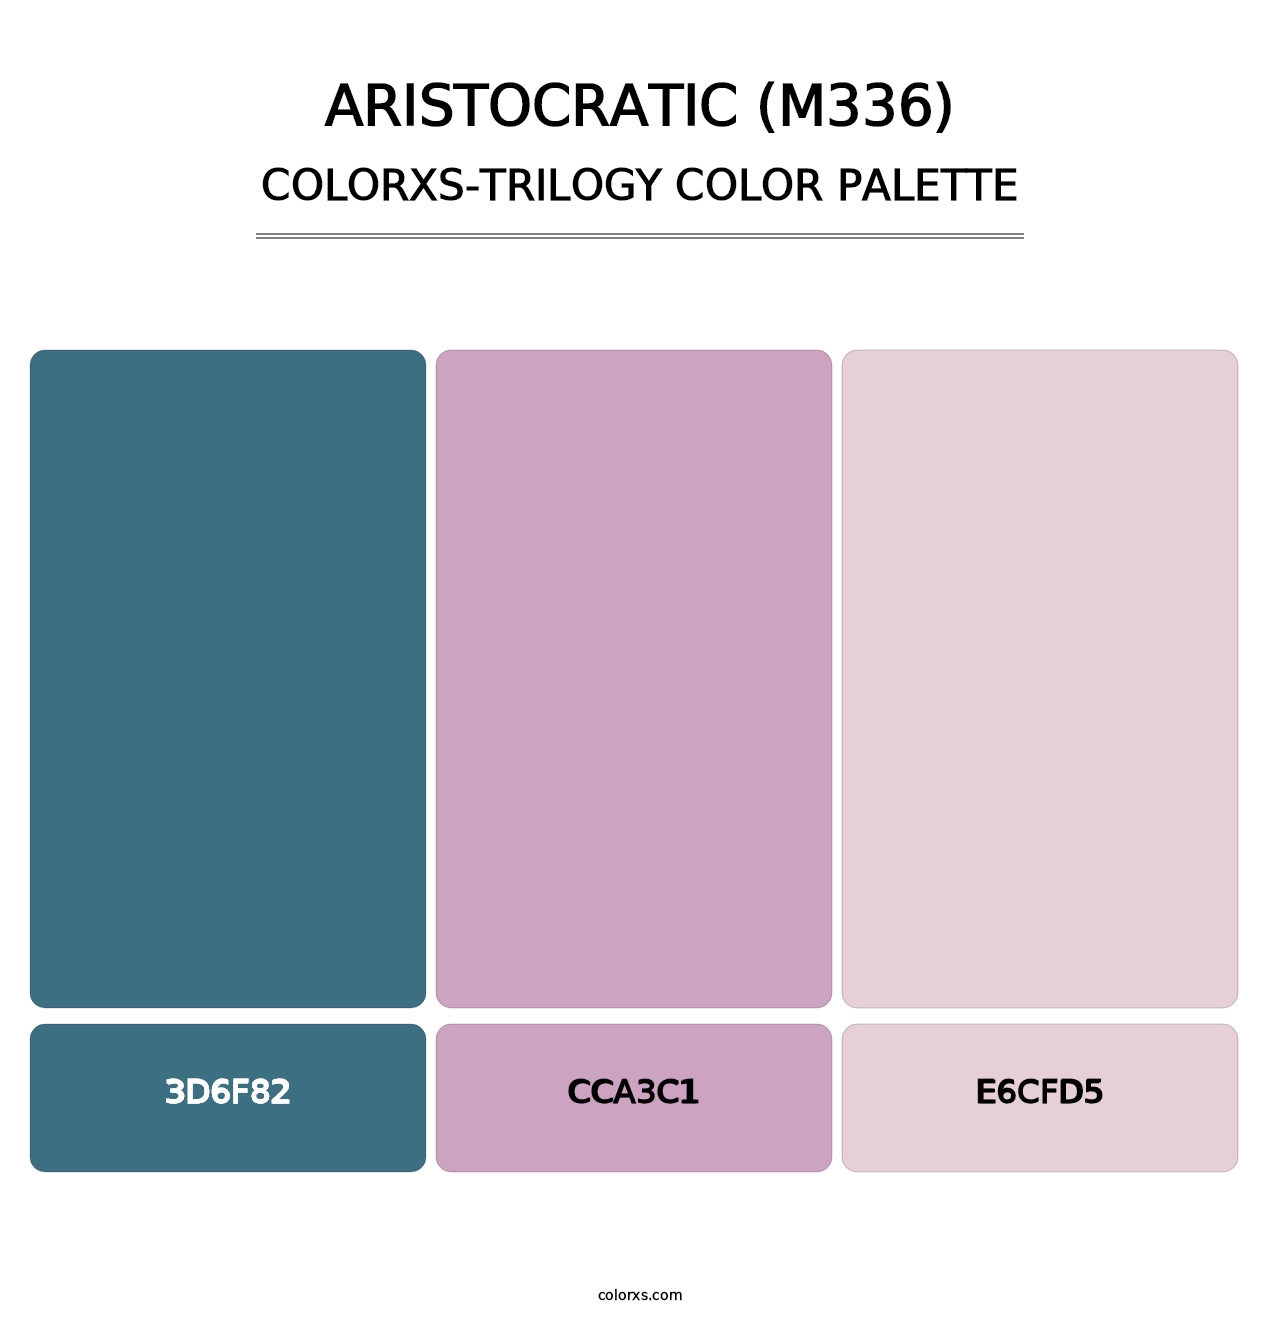 Aristocratic (M336) - Colorxs Trilogy Palette